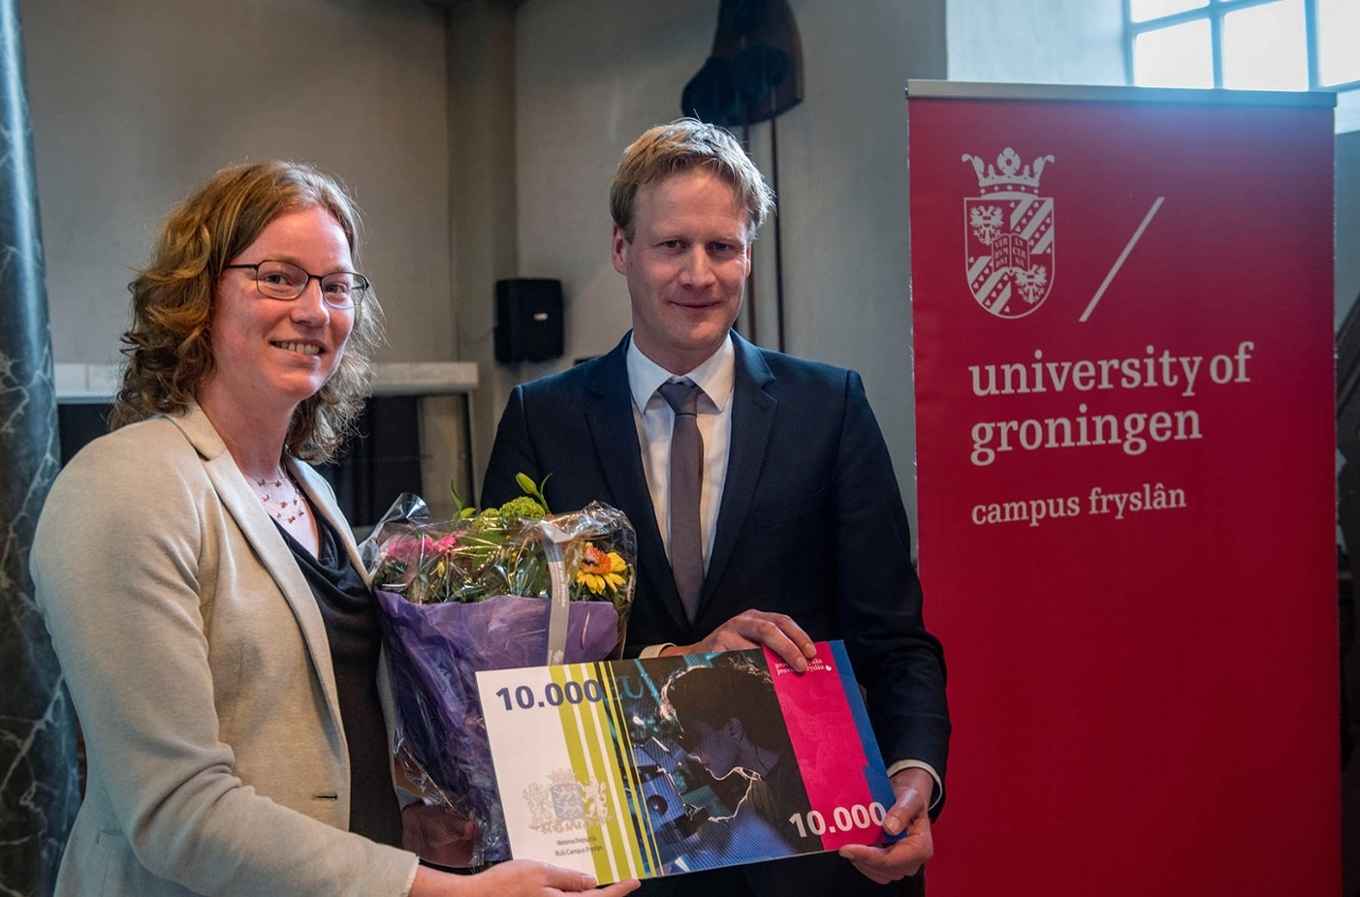 Evelyn Bosma wint de eerste Wetenschapsprijs Campus Fryslân